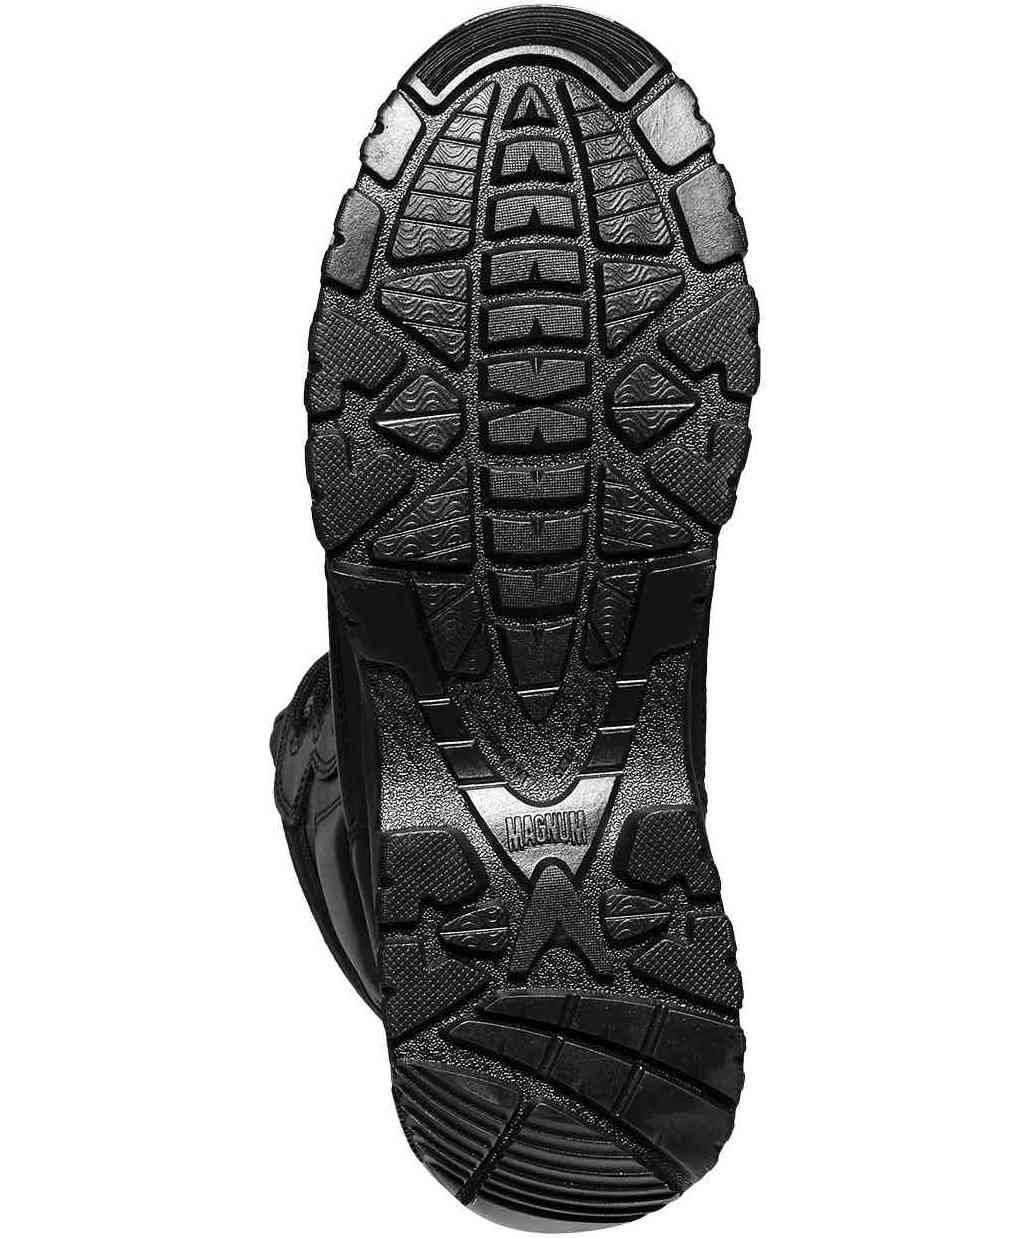 Magnum Viper Pro 8.0 Combat Boots Metal Free Black